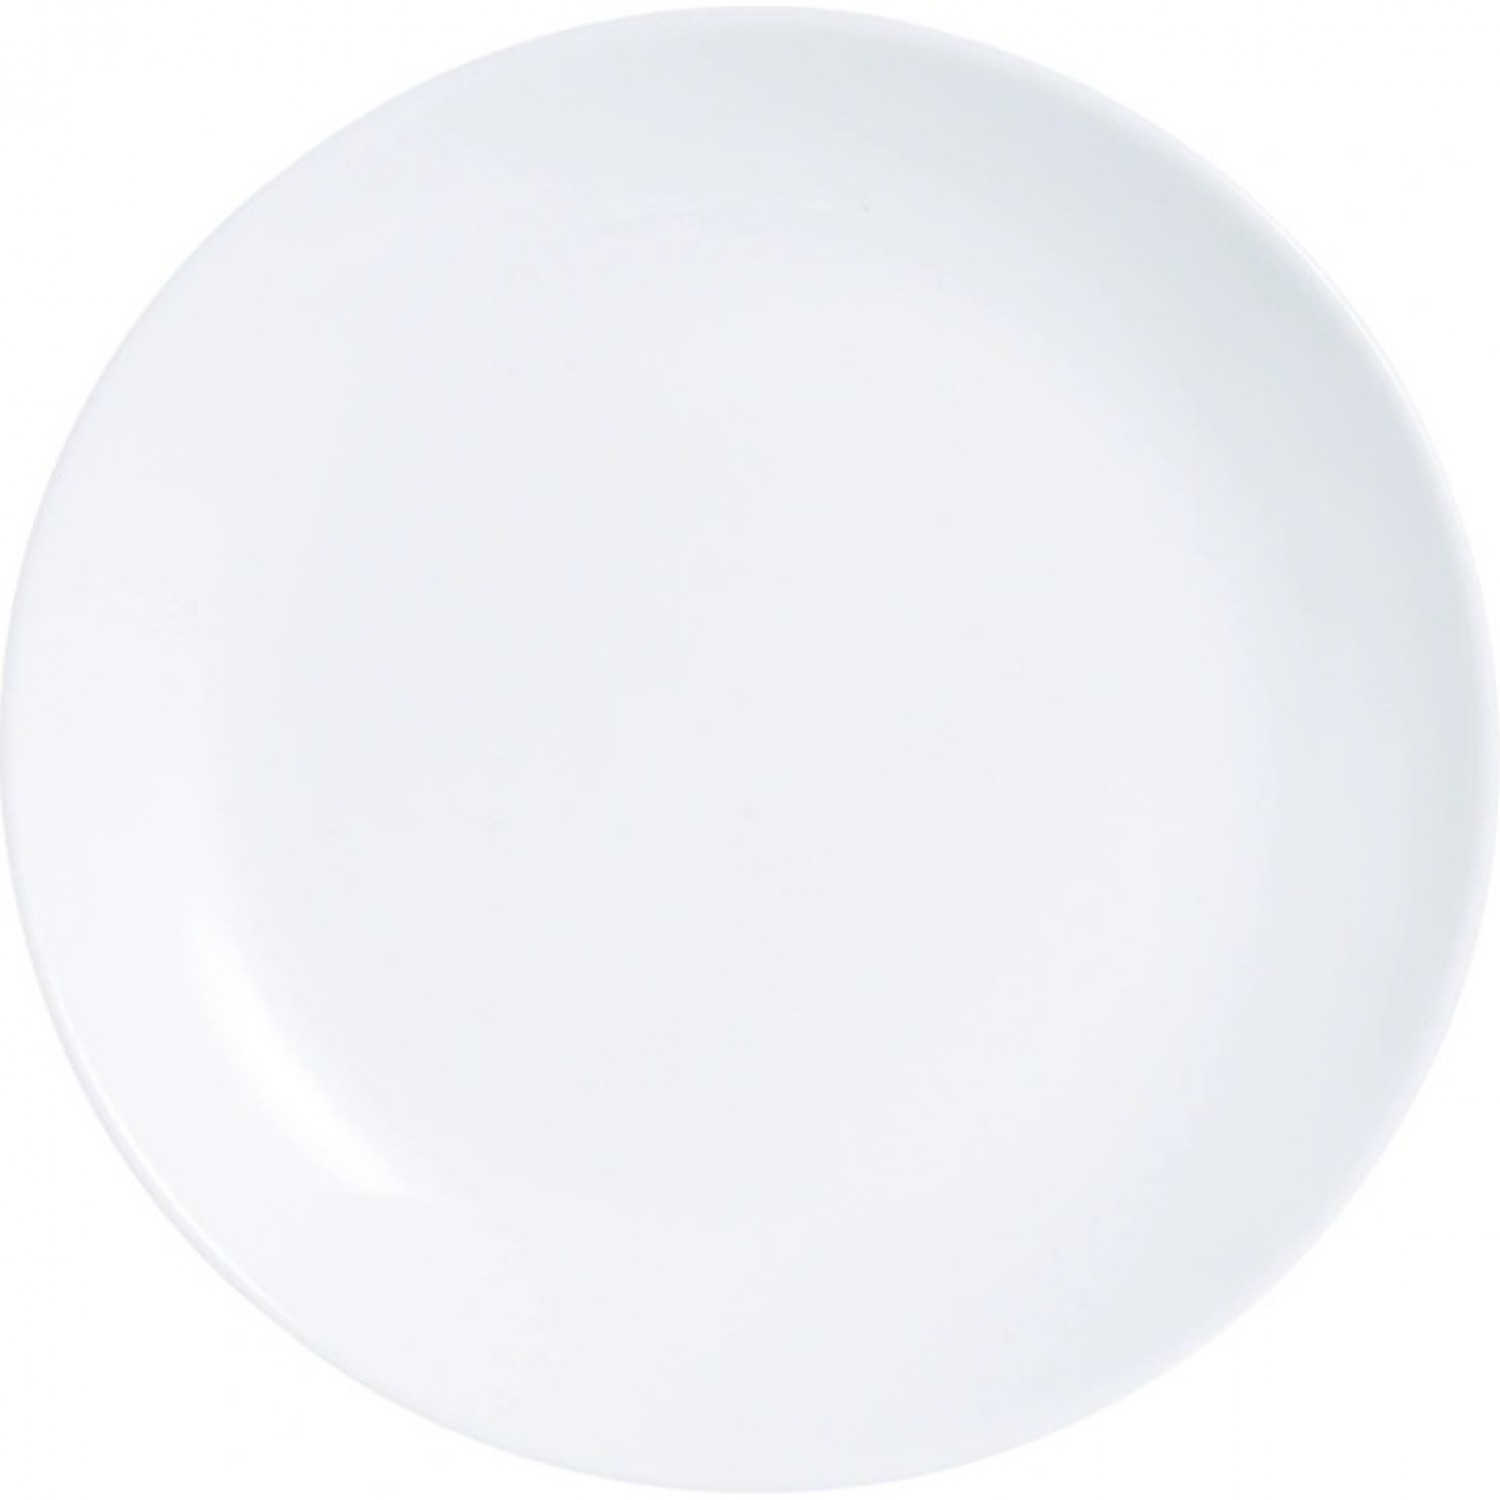 Тарелка обеденная ДИВАЛИ 25см LUMINARC D6905 (P3299) тарелка обеденная luminarc дивали гранит 25см стекло p0870